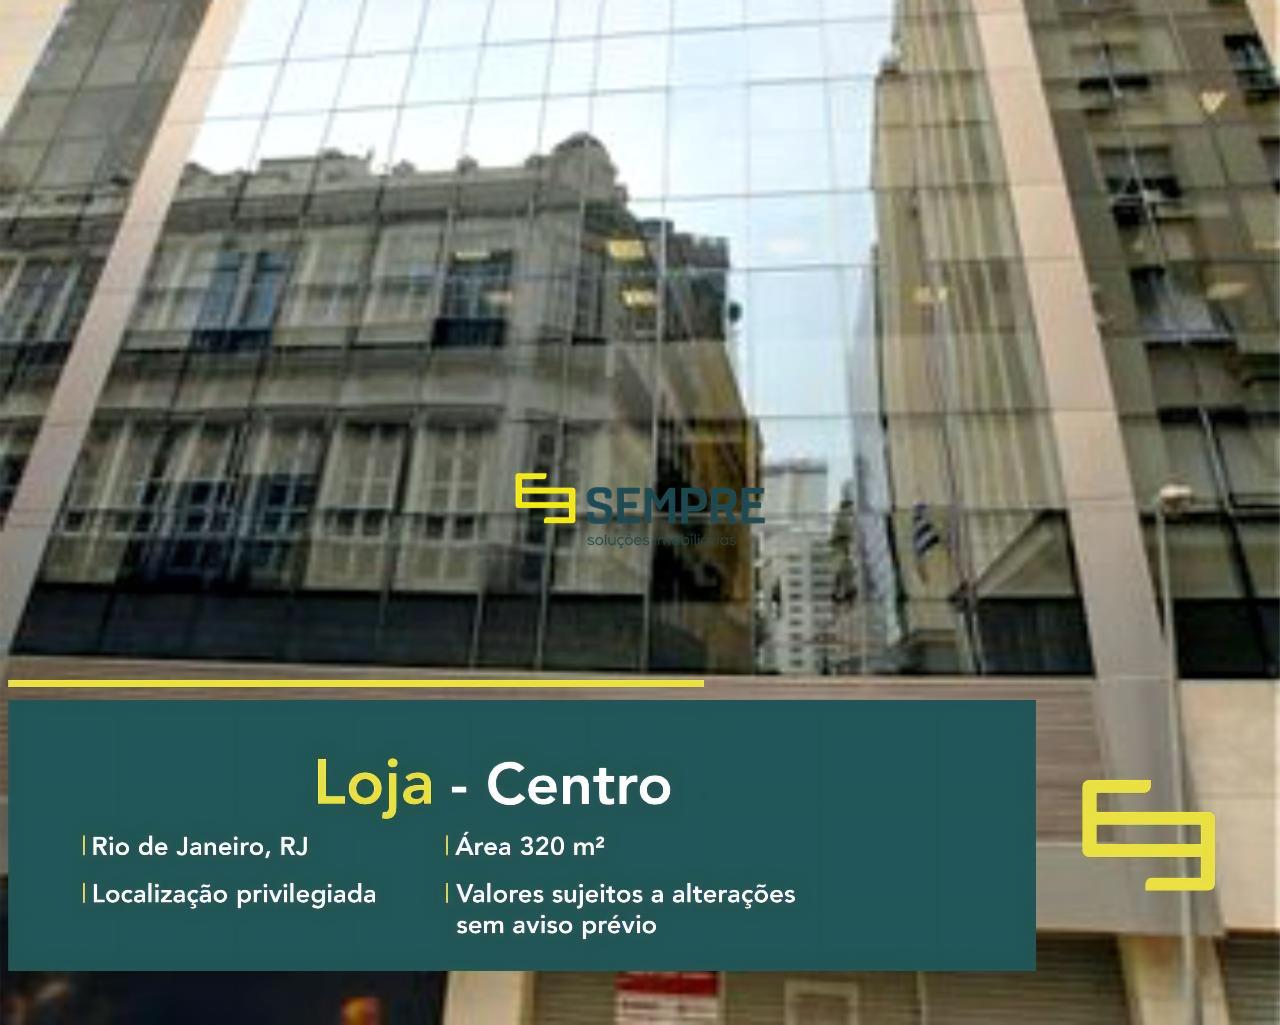 Andar corporativo para locação no Centro do Rio de Janeiro em excelente localização. O estabelecimento comercial conta com área de 320 m².